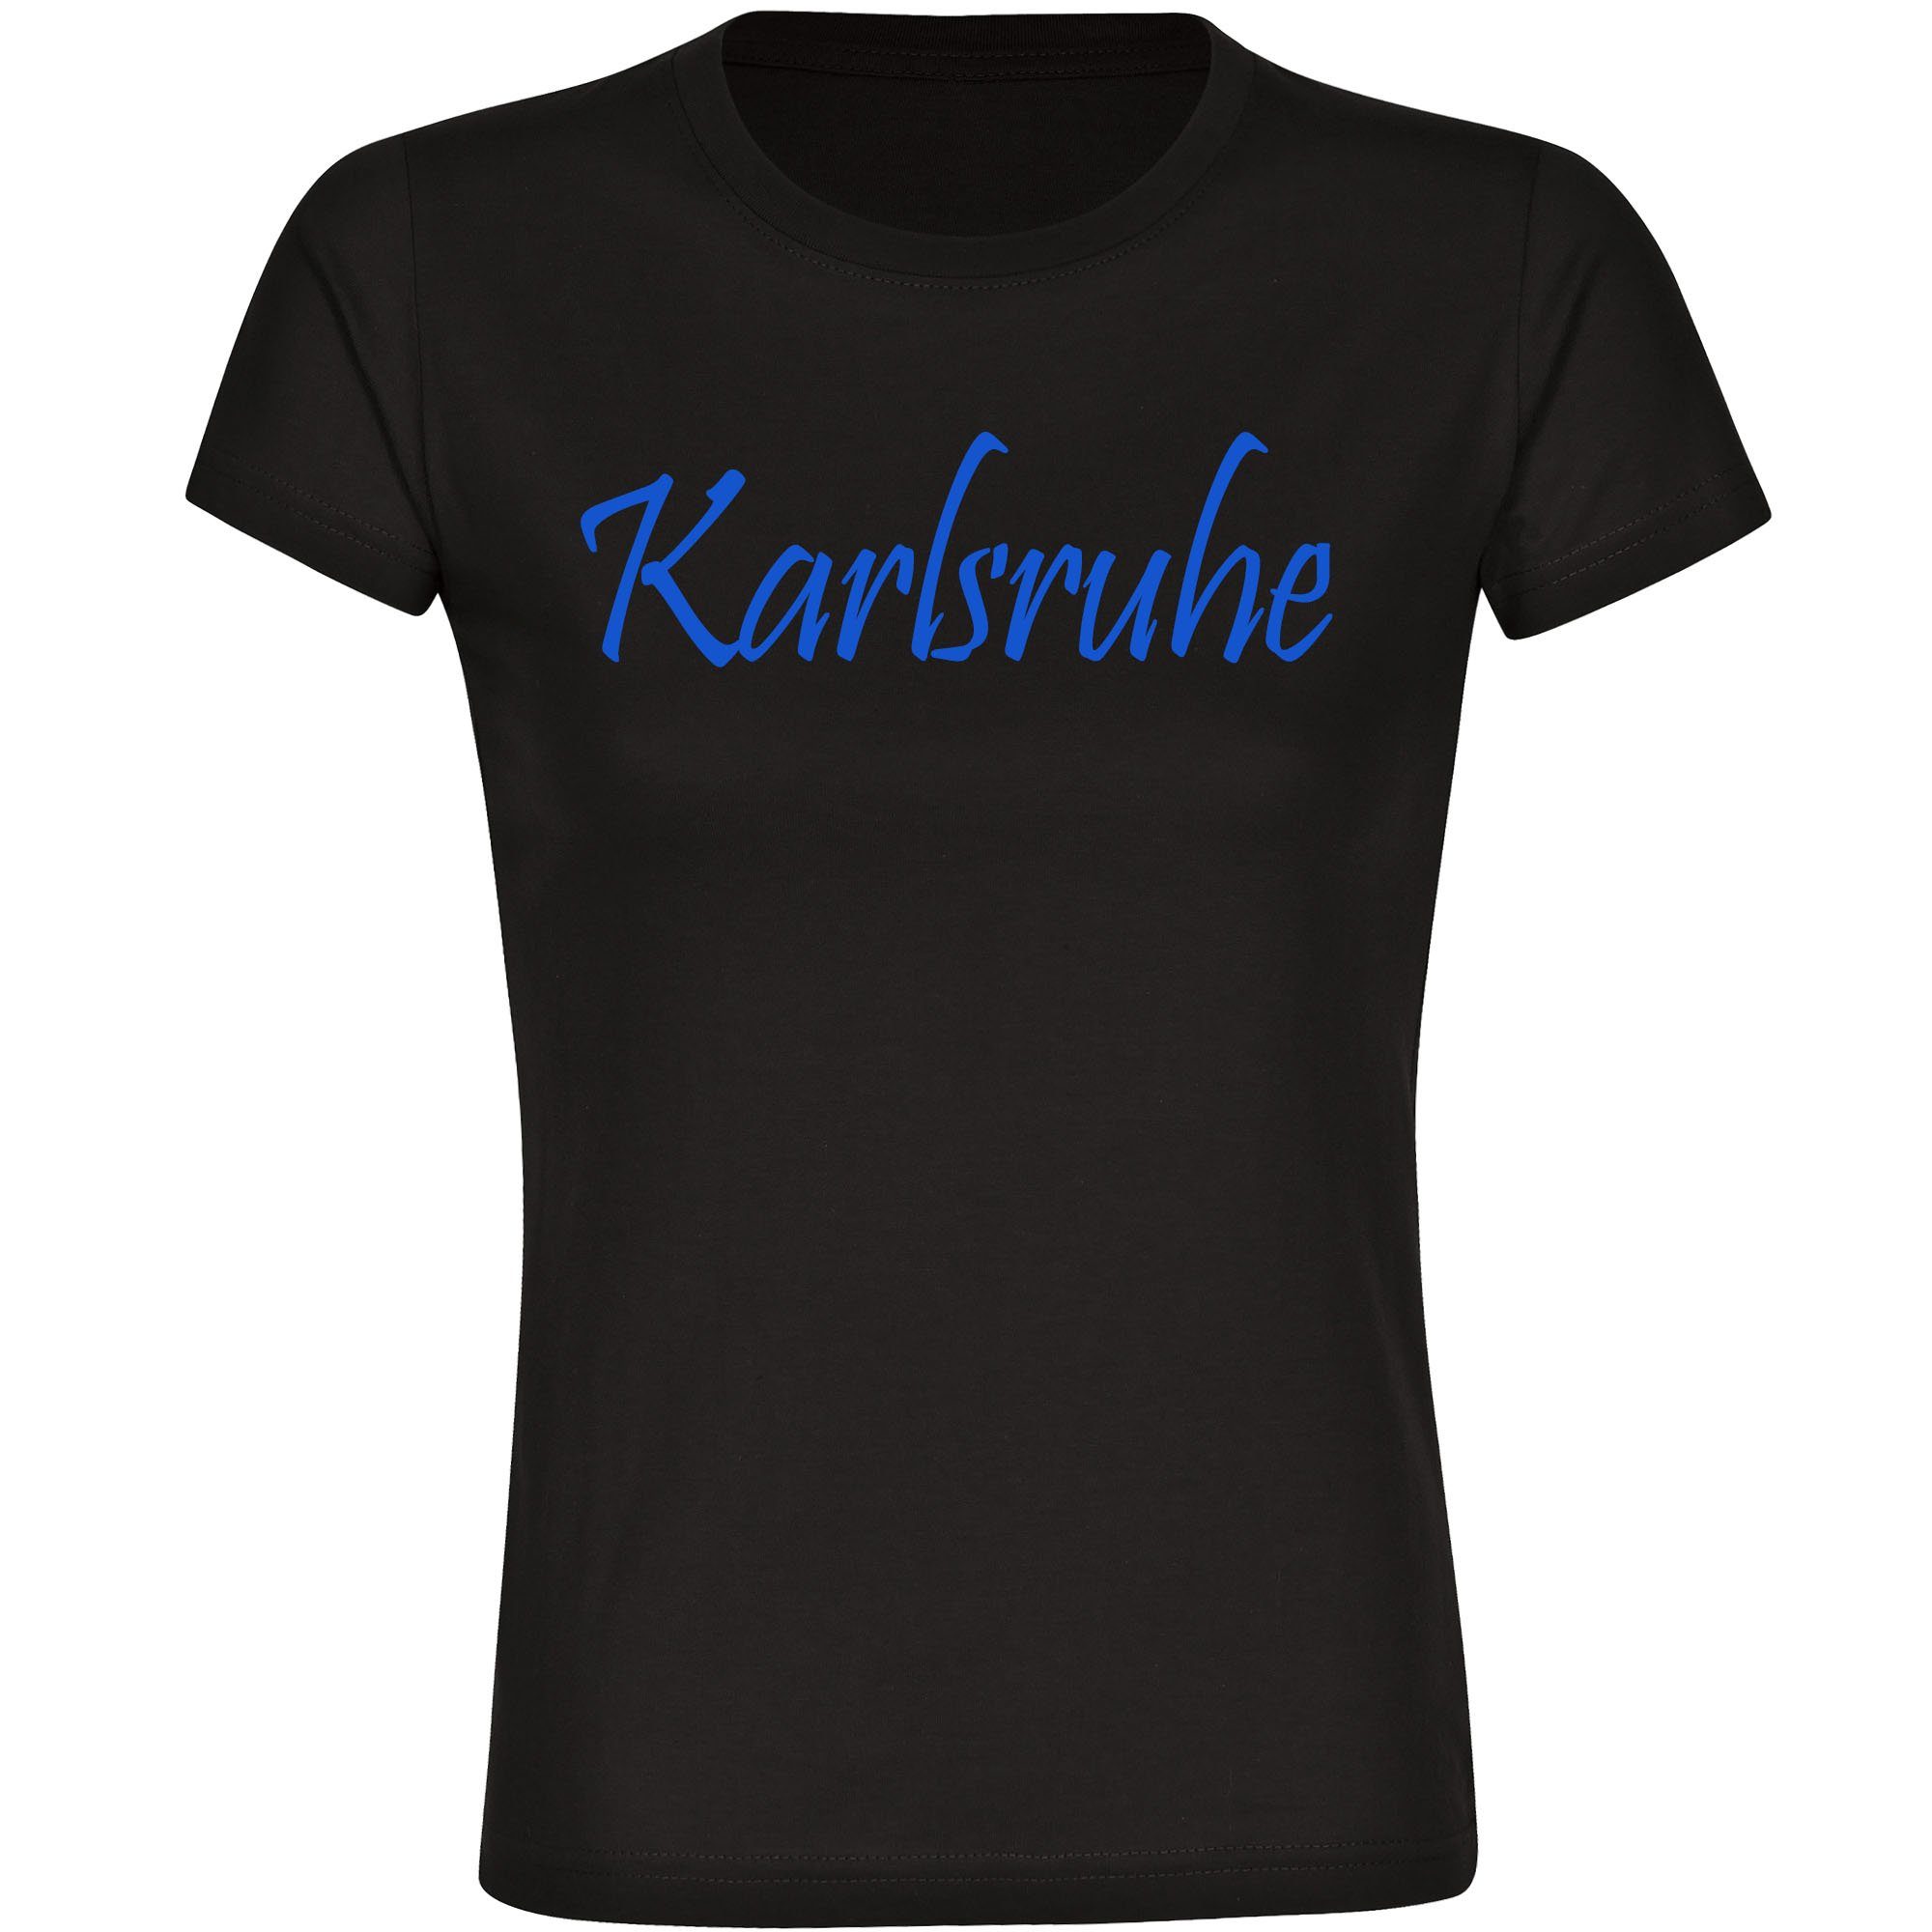 multifanshop T-Shirt Damen Karlsruhe - Schriftzug - Frauen